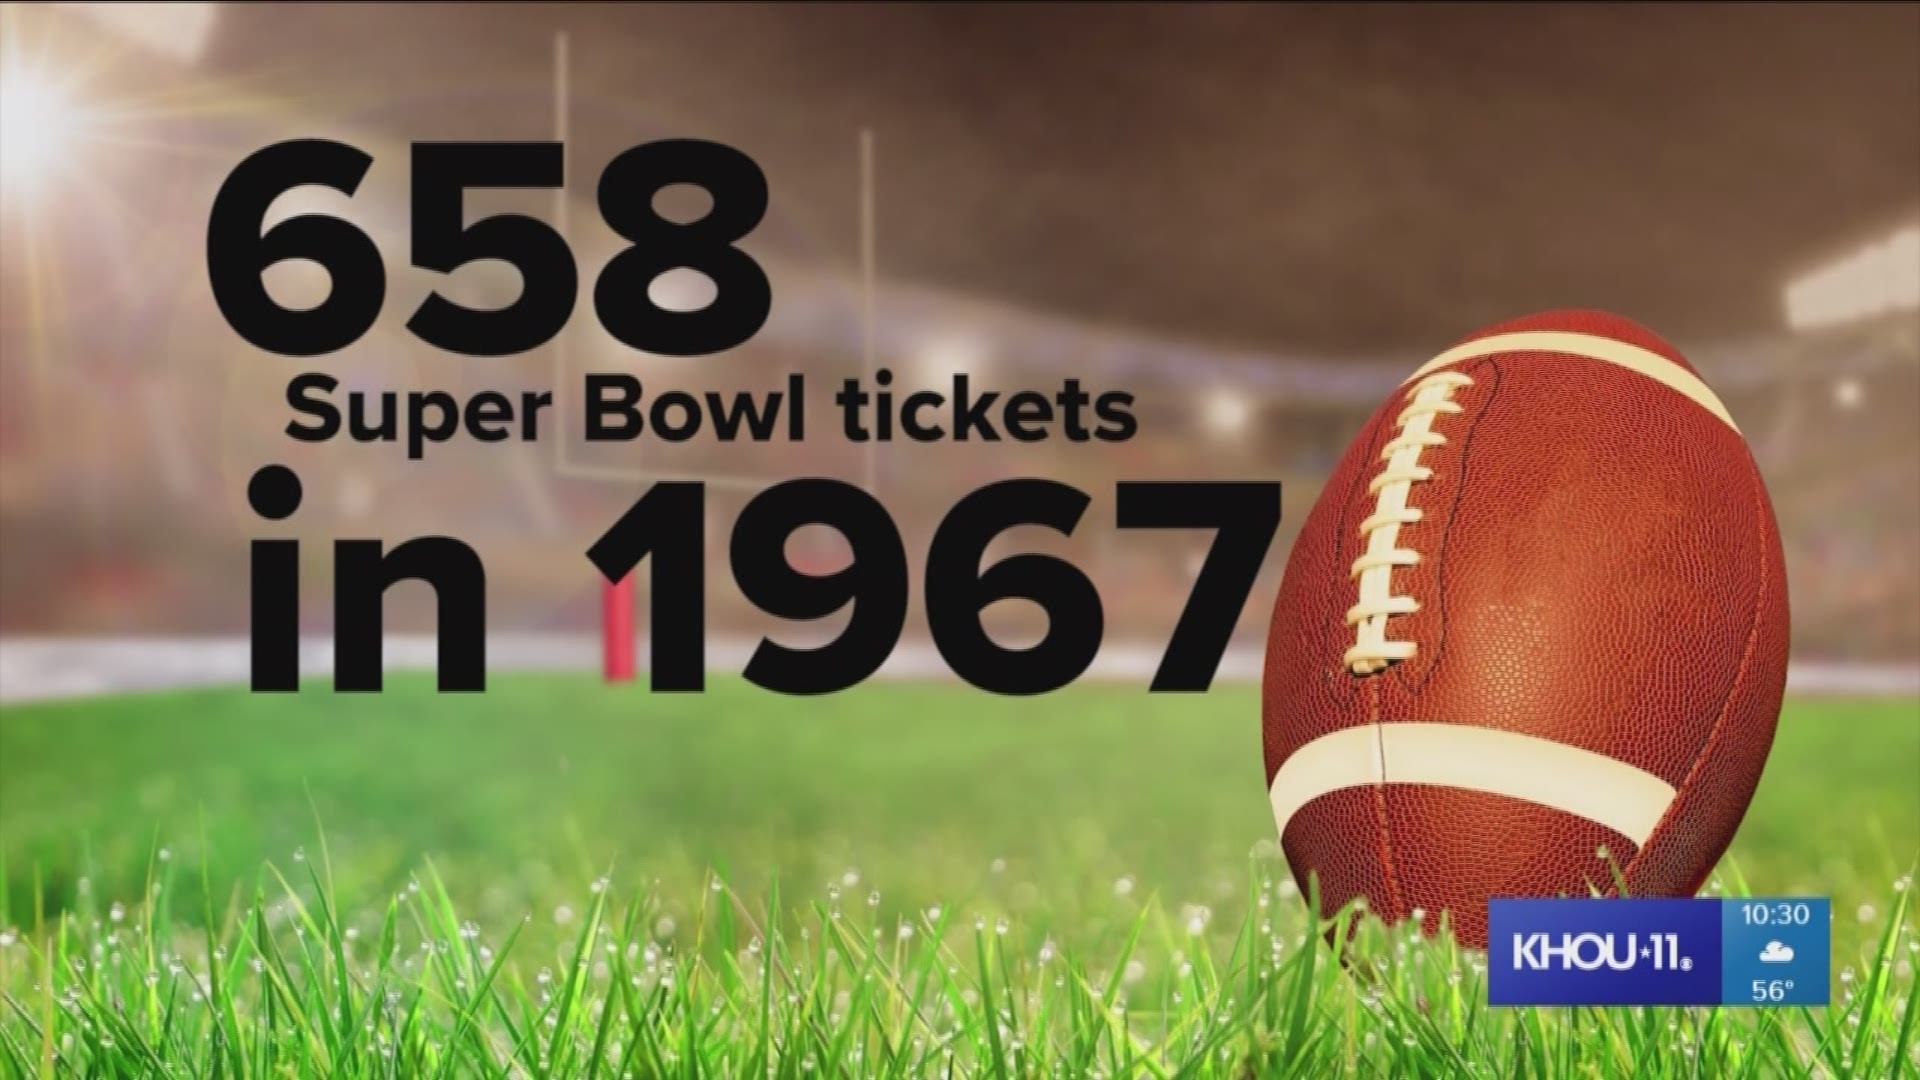 1967 super bowl ticket